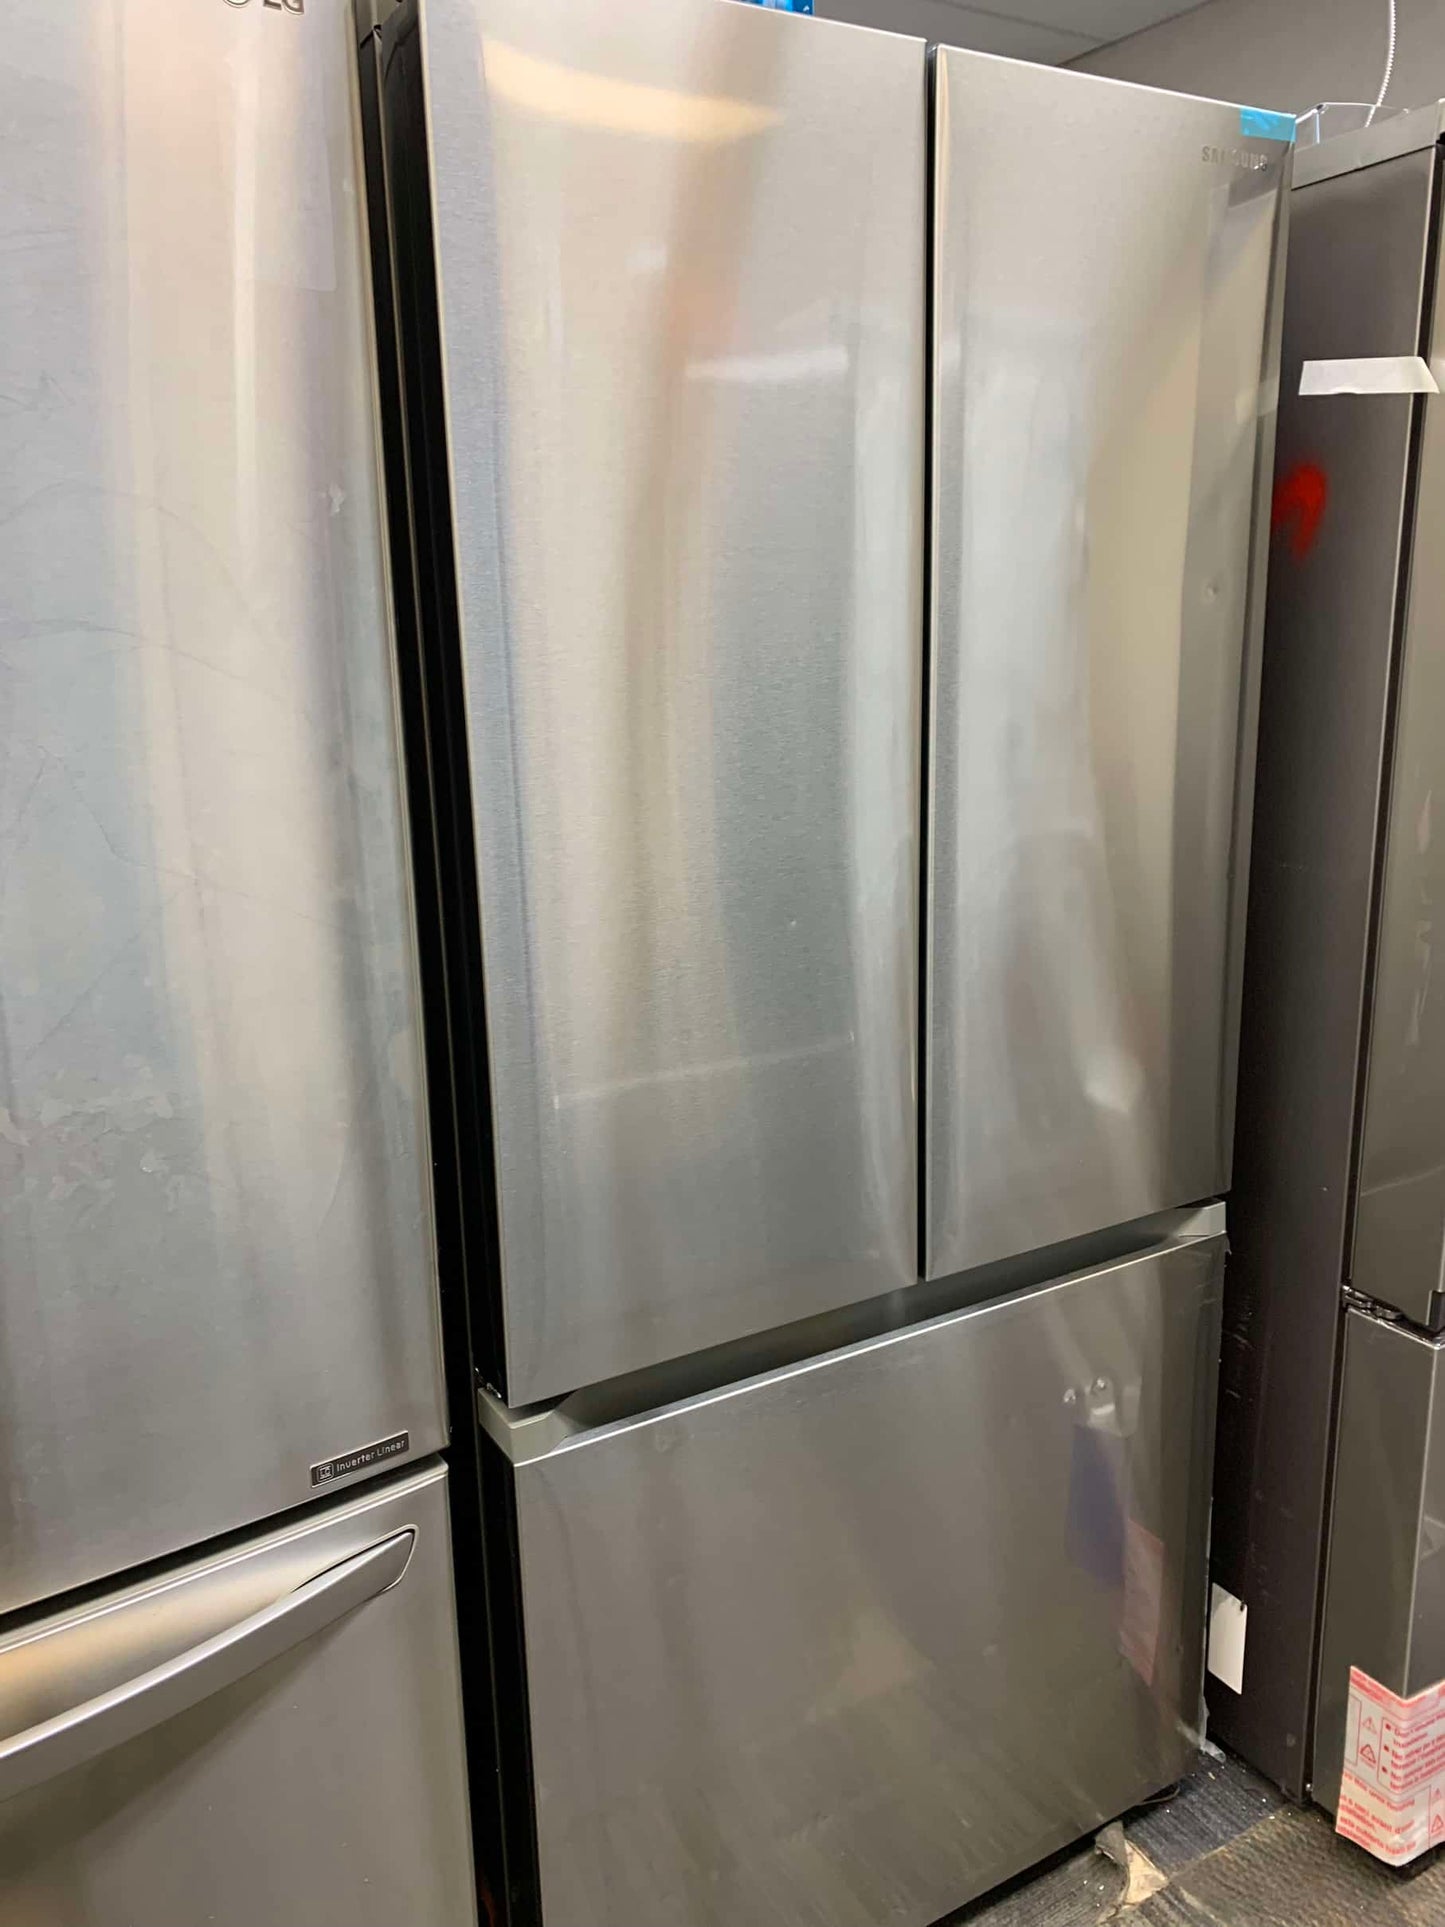 ★ Samsung Open Box 17.5 cu. ft. 3-Door French Door Smart Refrigerator in Stainless Steel, Counter Depth RF3381